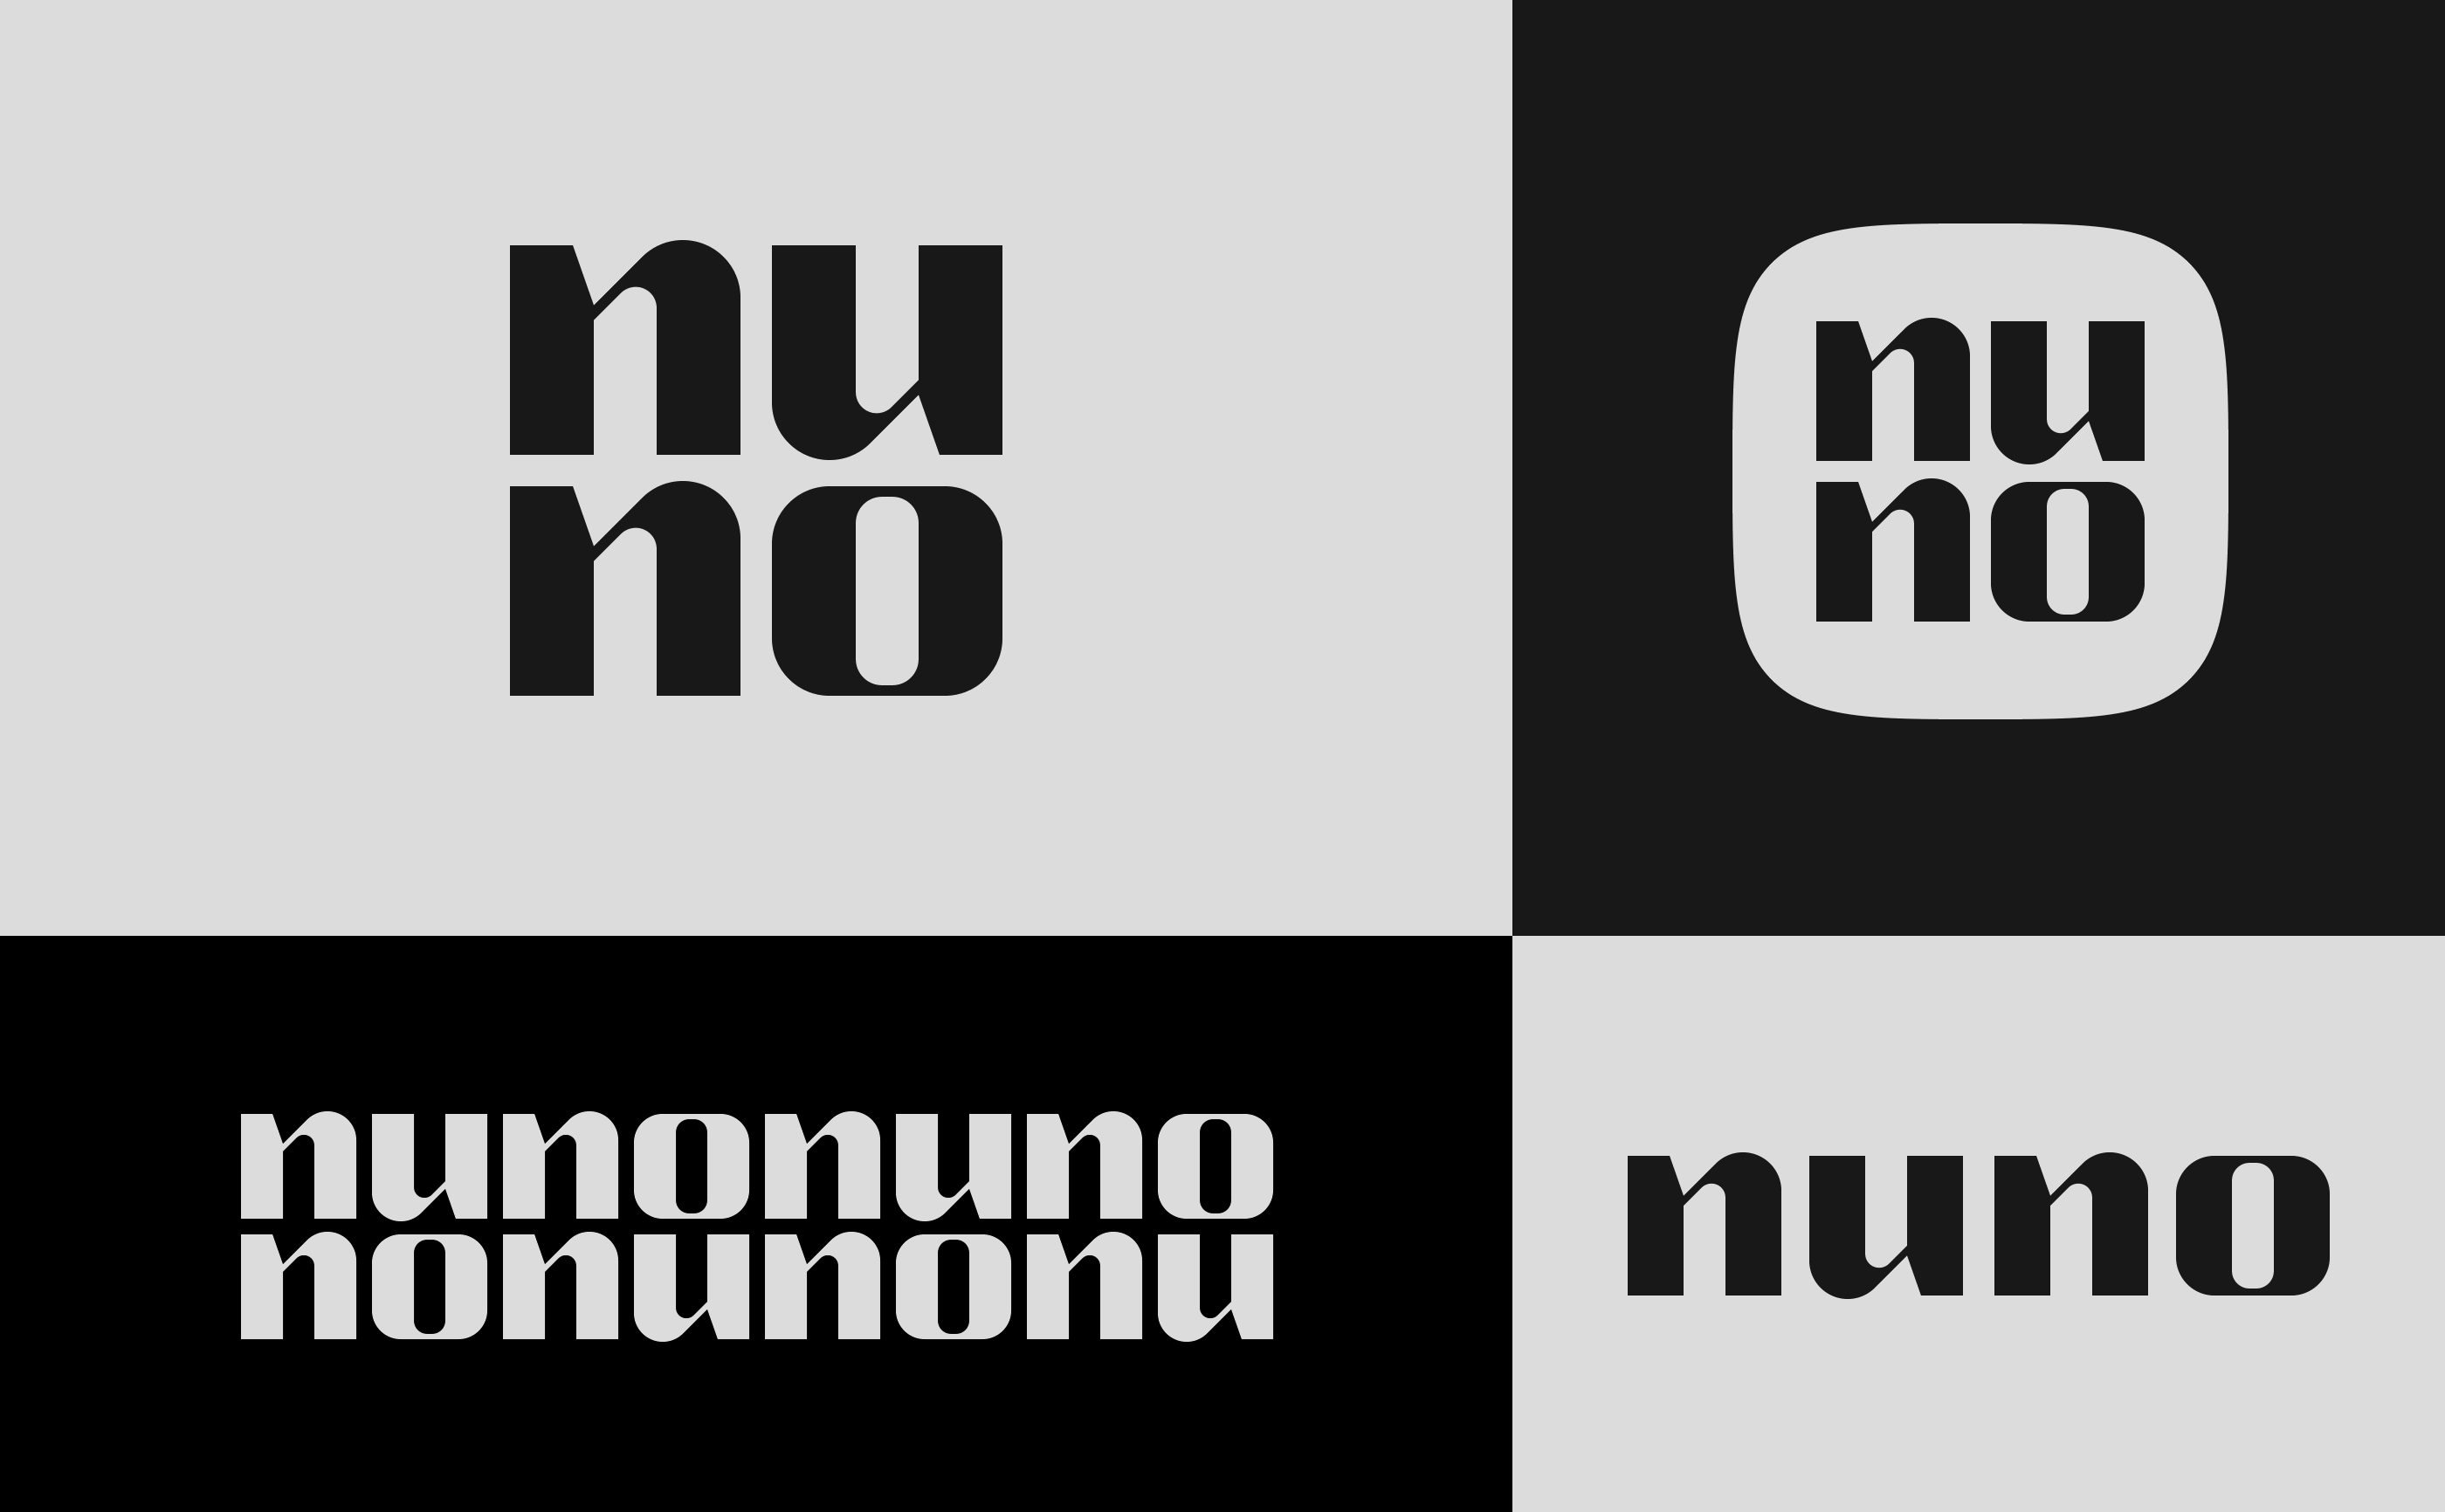 Nuno-006